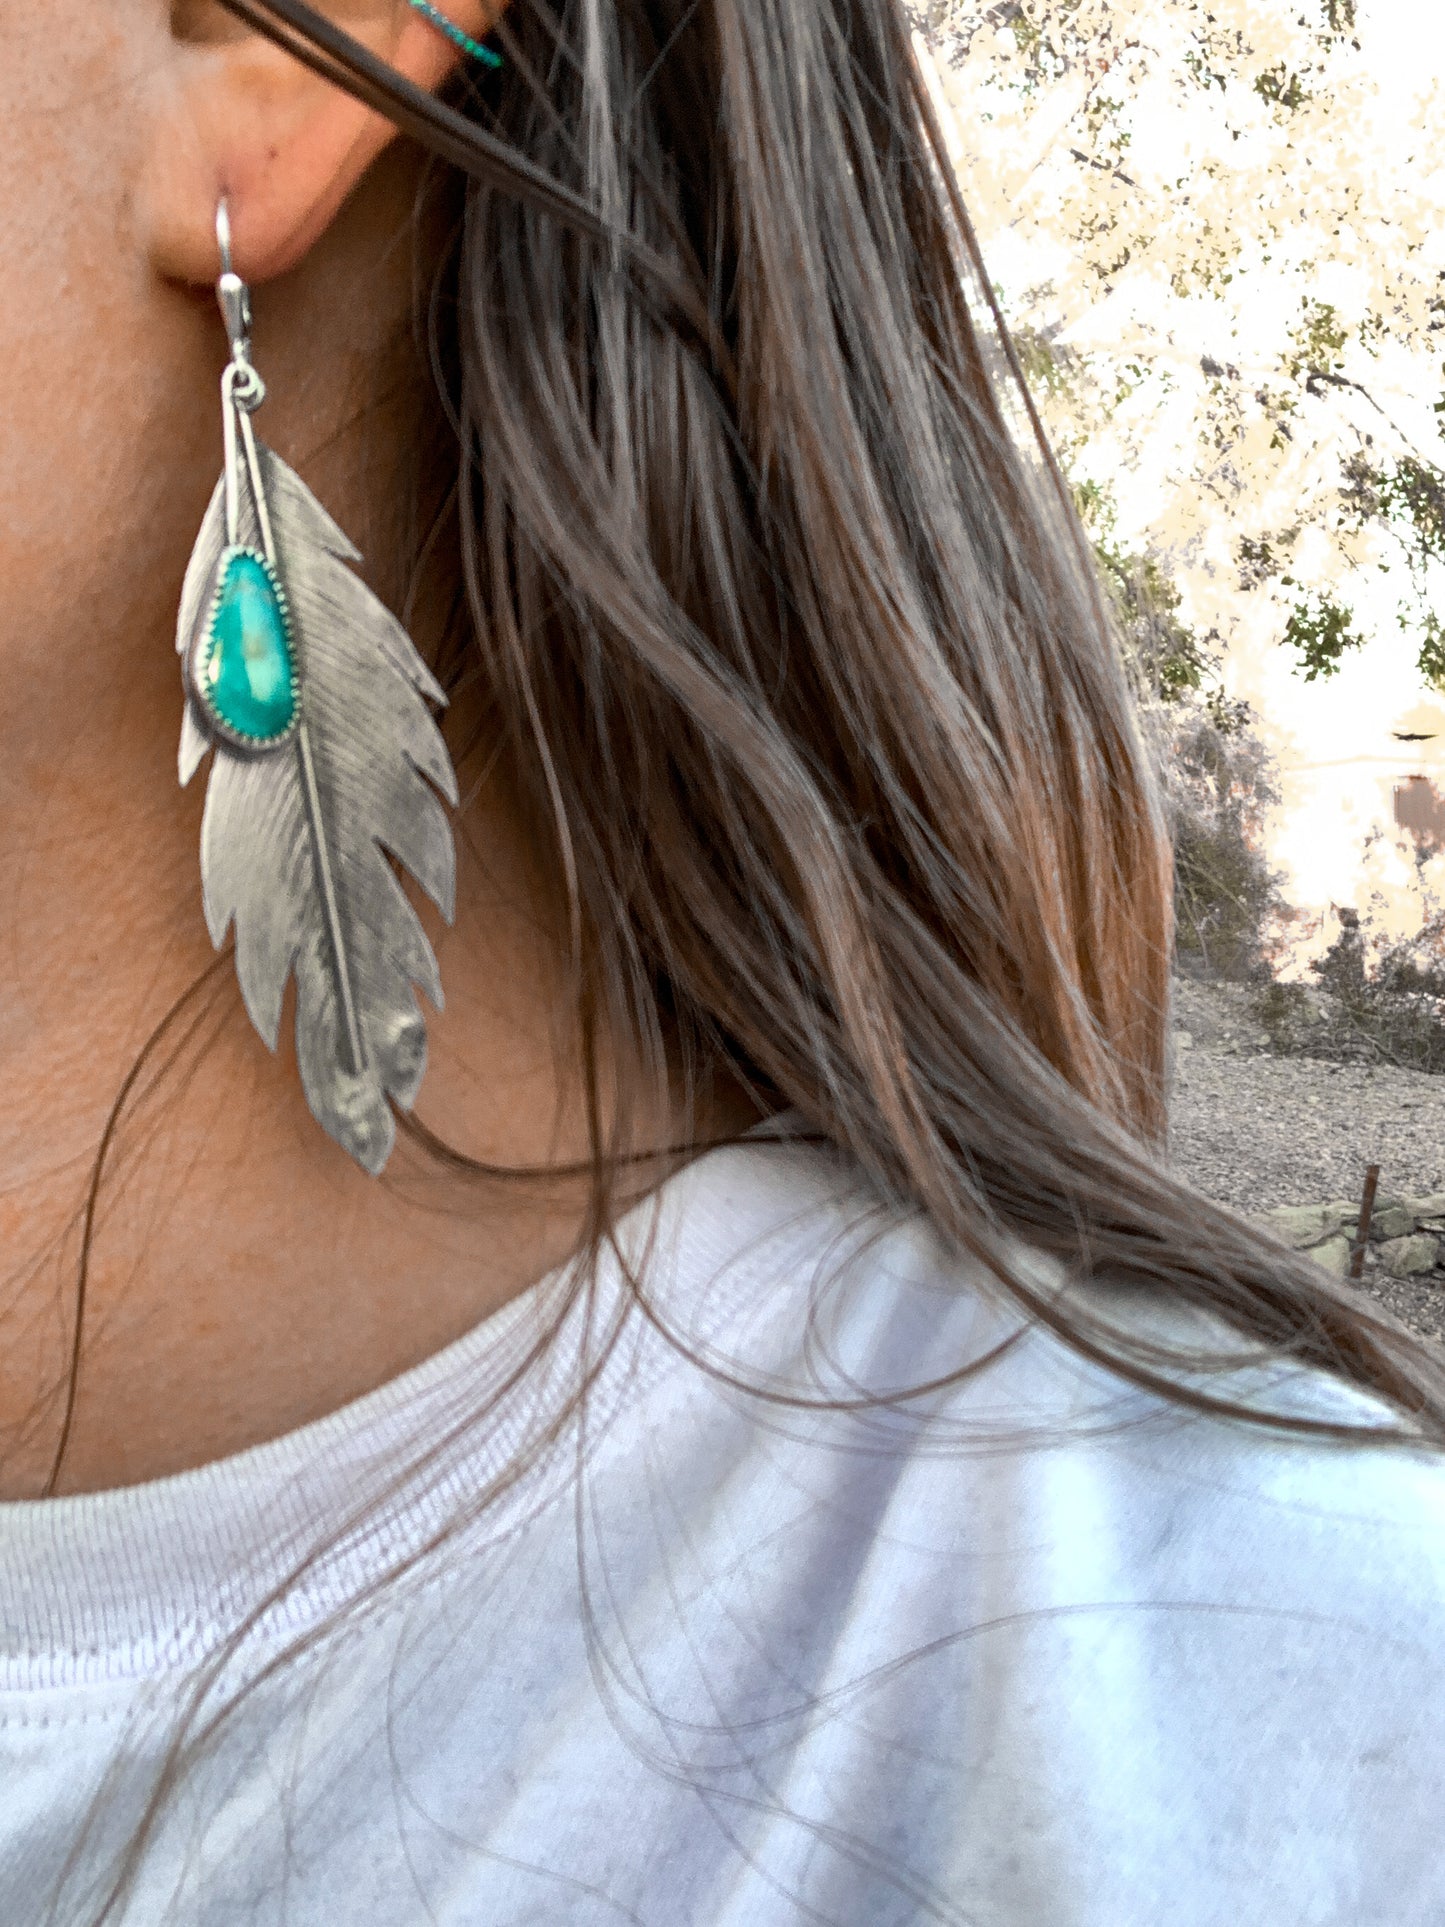 Pocahontas earrings